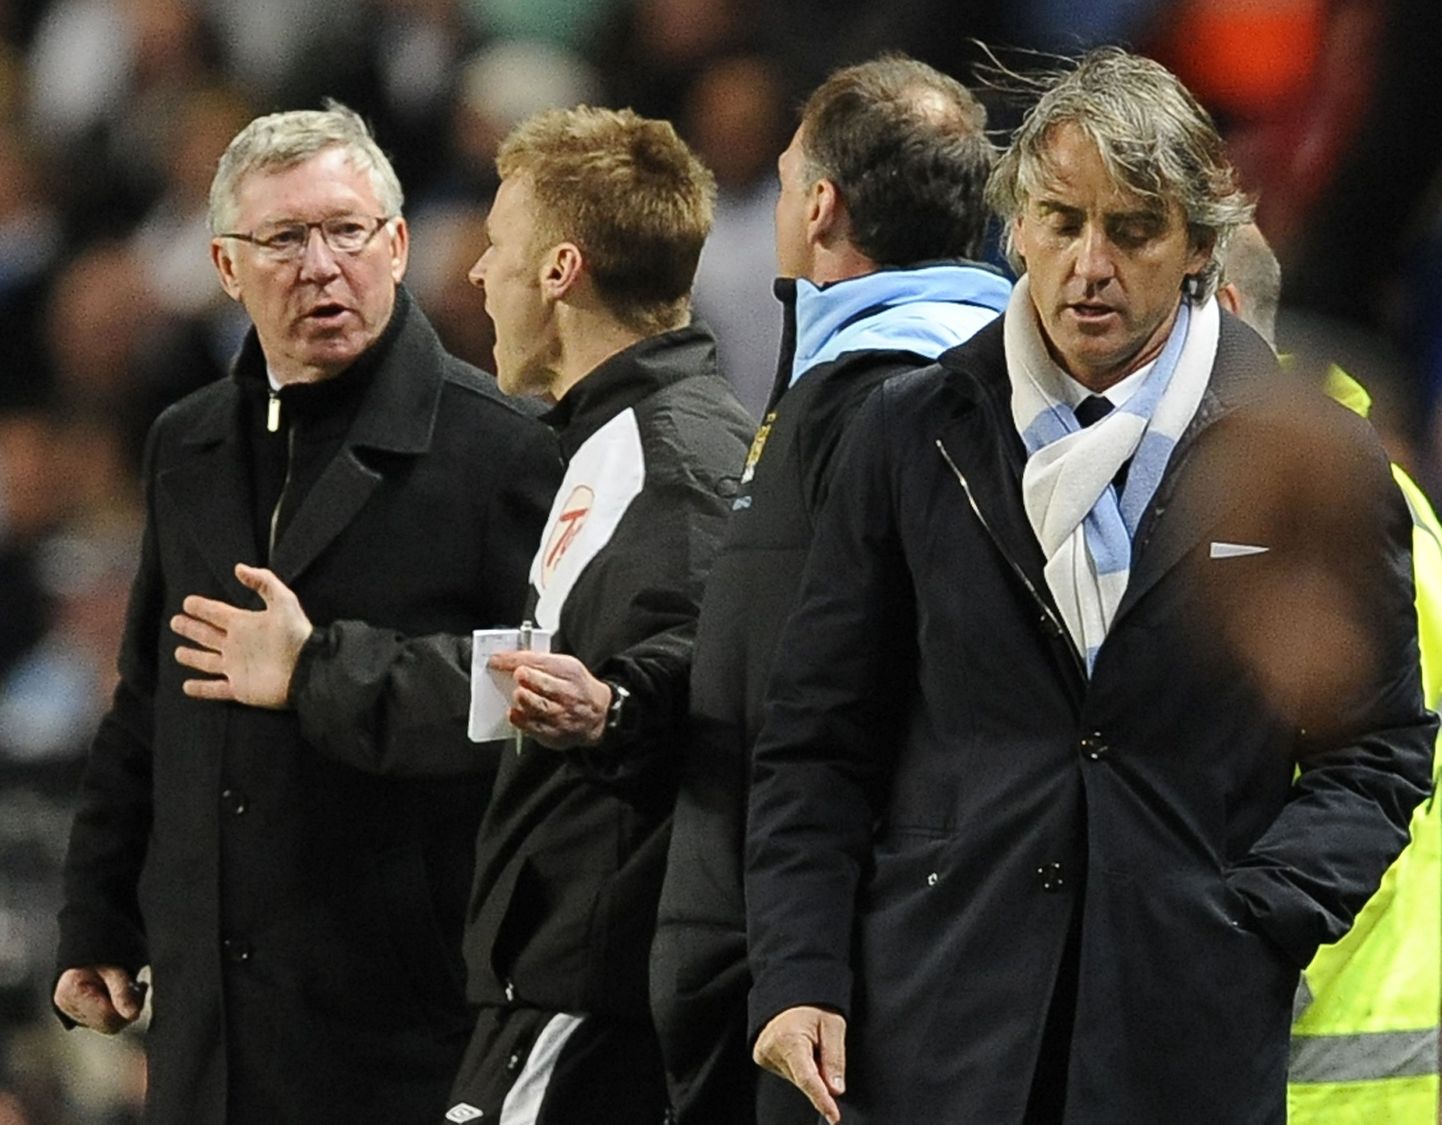 Manchester Unitedi peatreener Sir Alex Ferguson (vasakul) ja Manchester City juhendaja Roberto Mancini (paremal) sattusid aprillikuise omavahelise mängu ajal sõnasõtta.